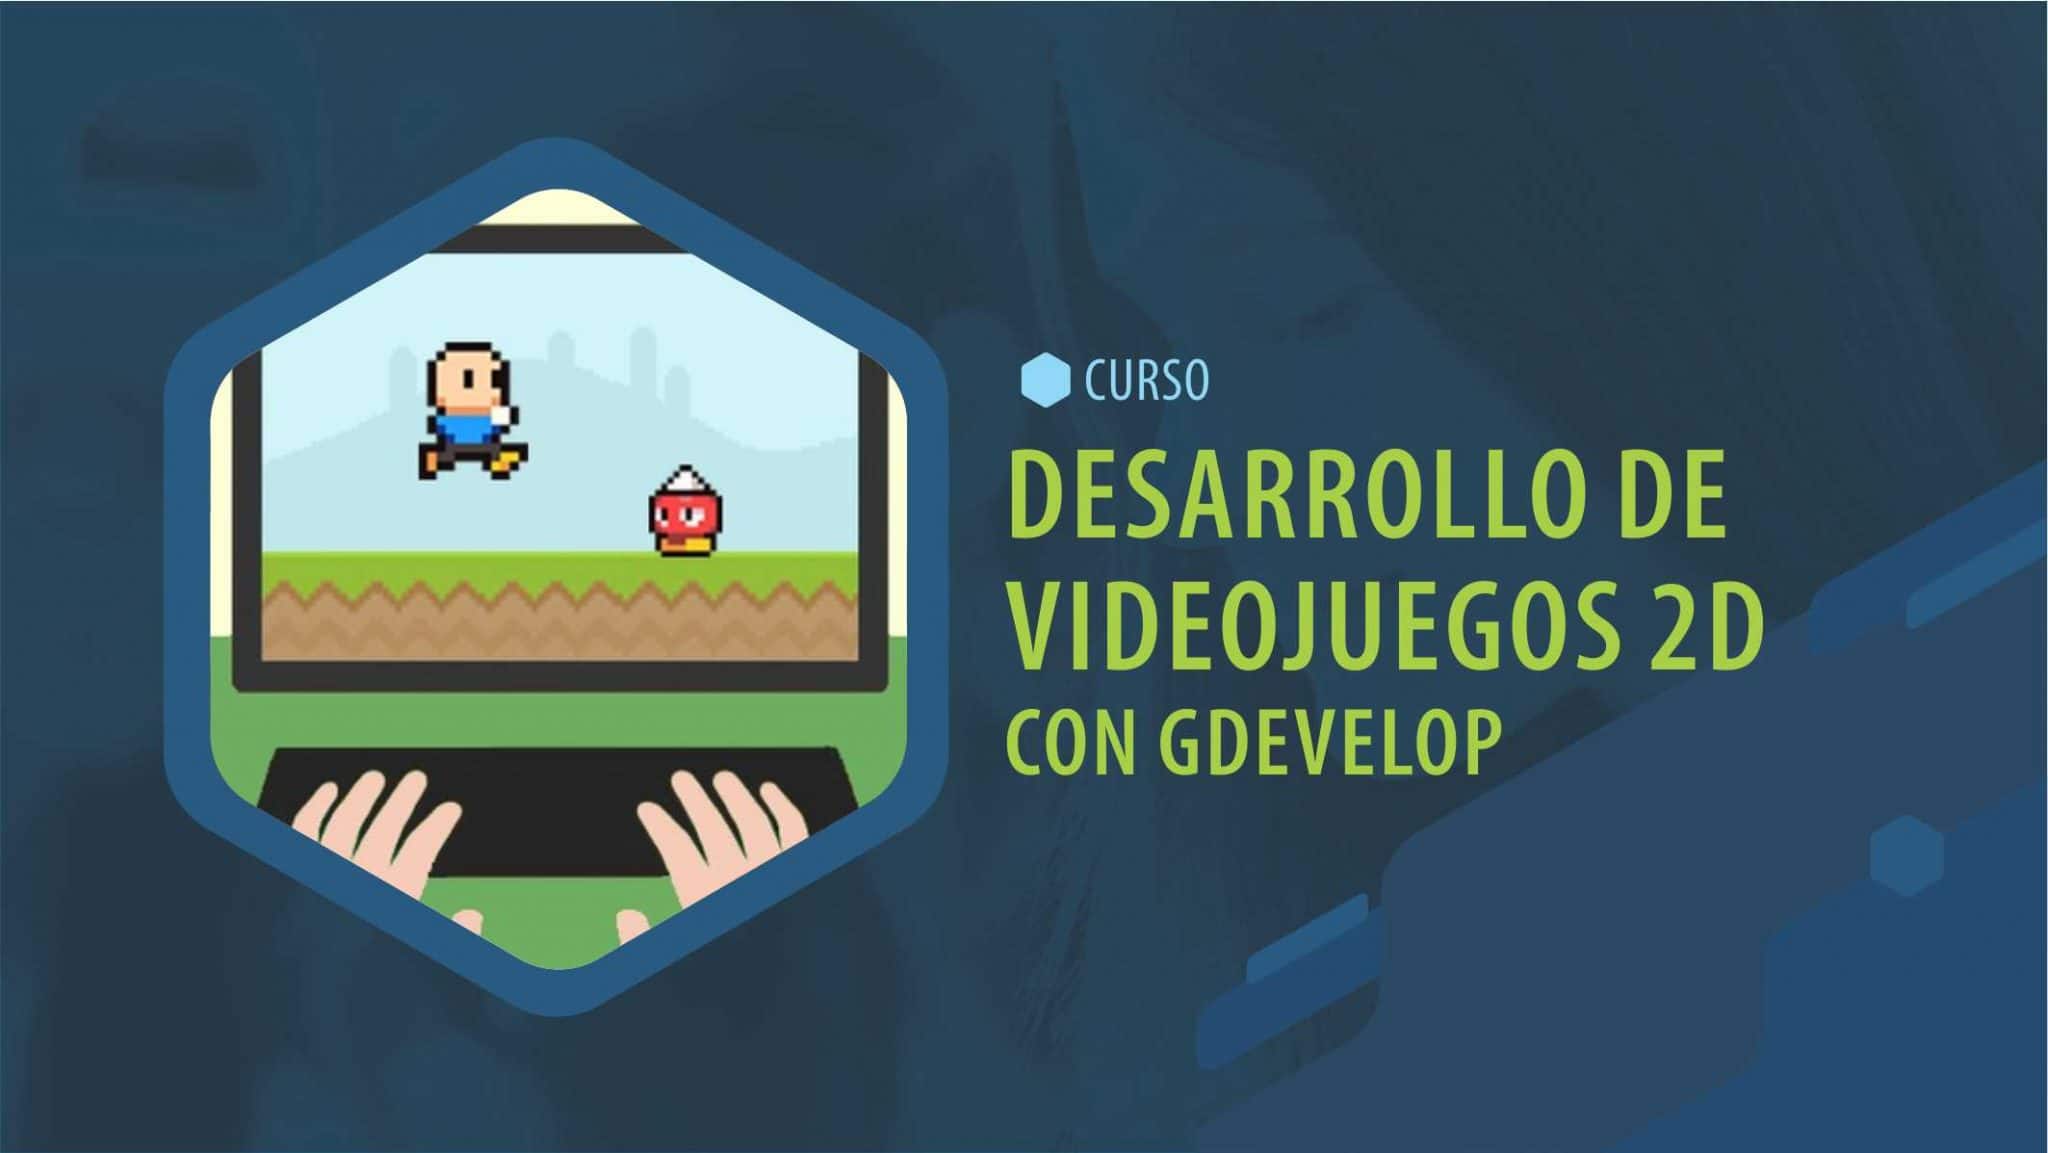 Desarrollo de videojuegos en 2D con GDevelop (adolescentes y pre-adolescentes)